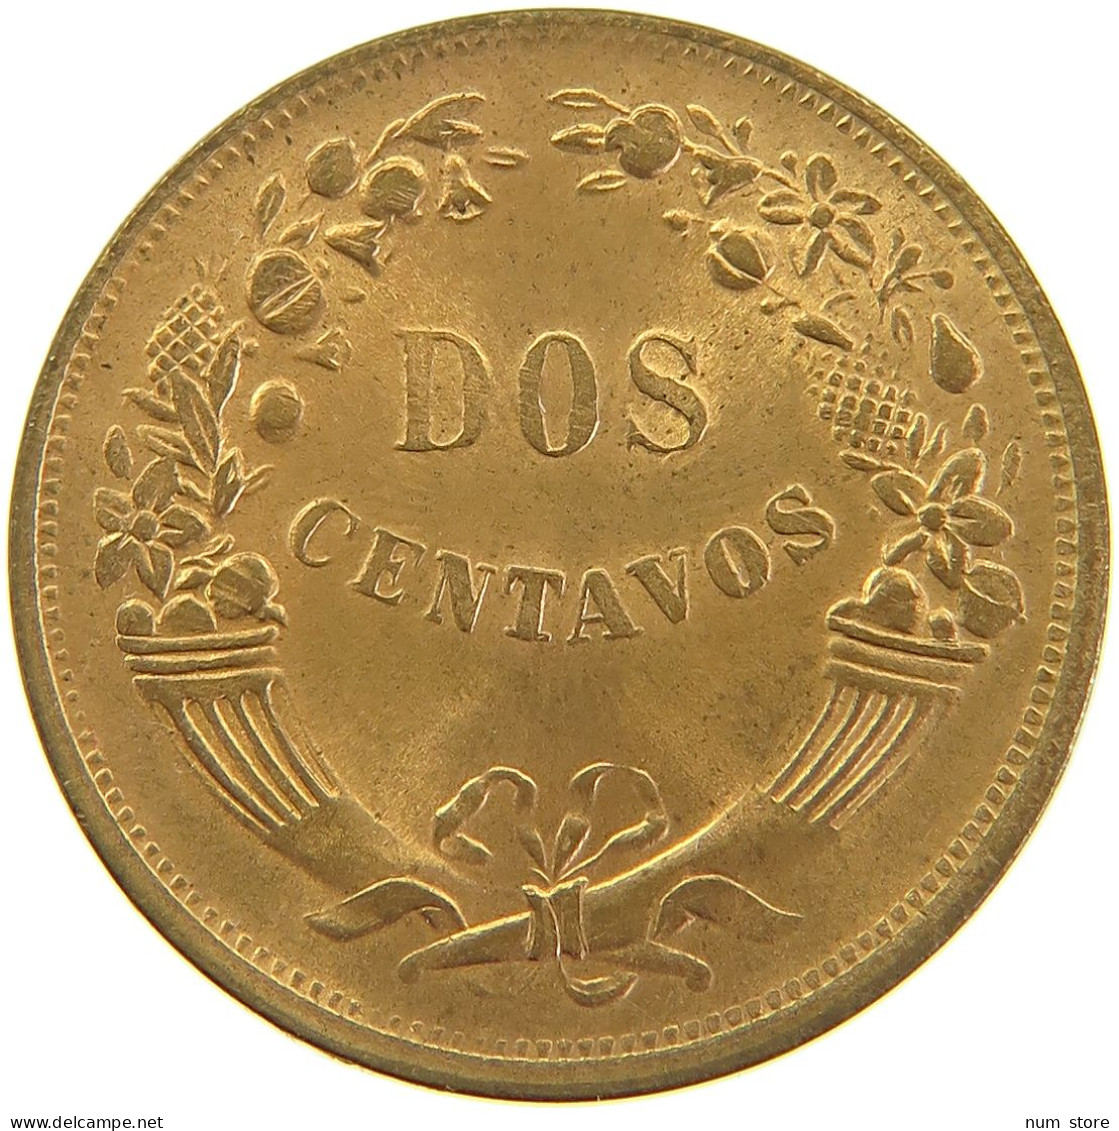 PERU 2 CENTAVOS 1942 UNC #t030 0209 - Peru